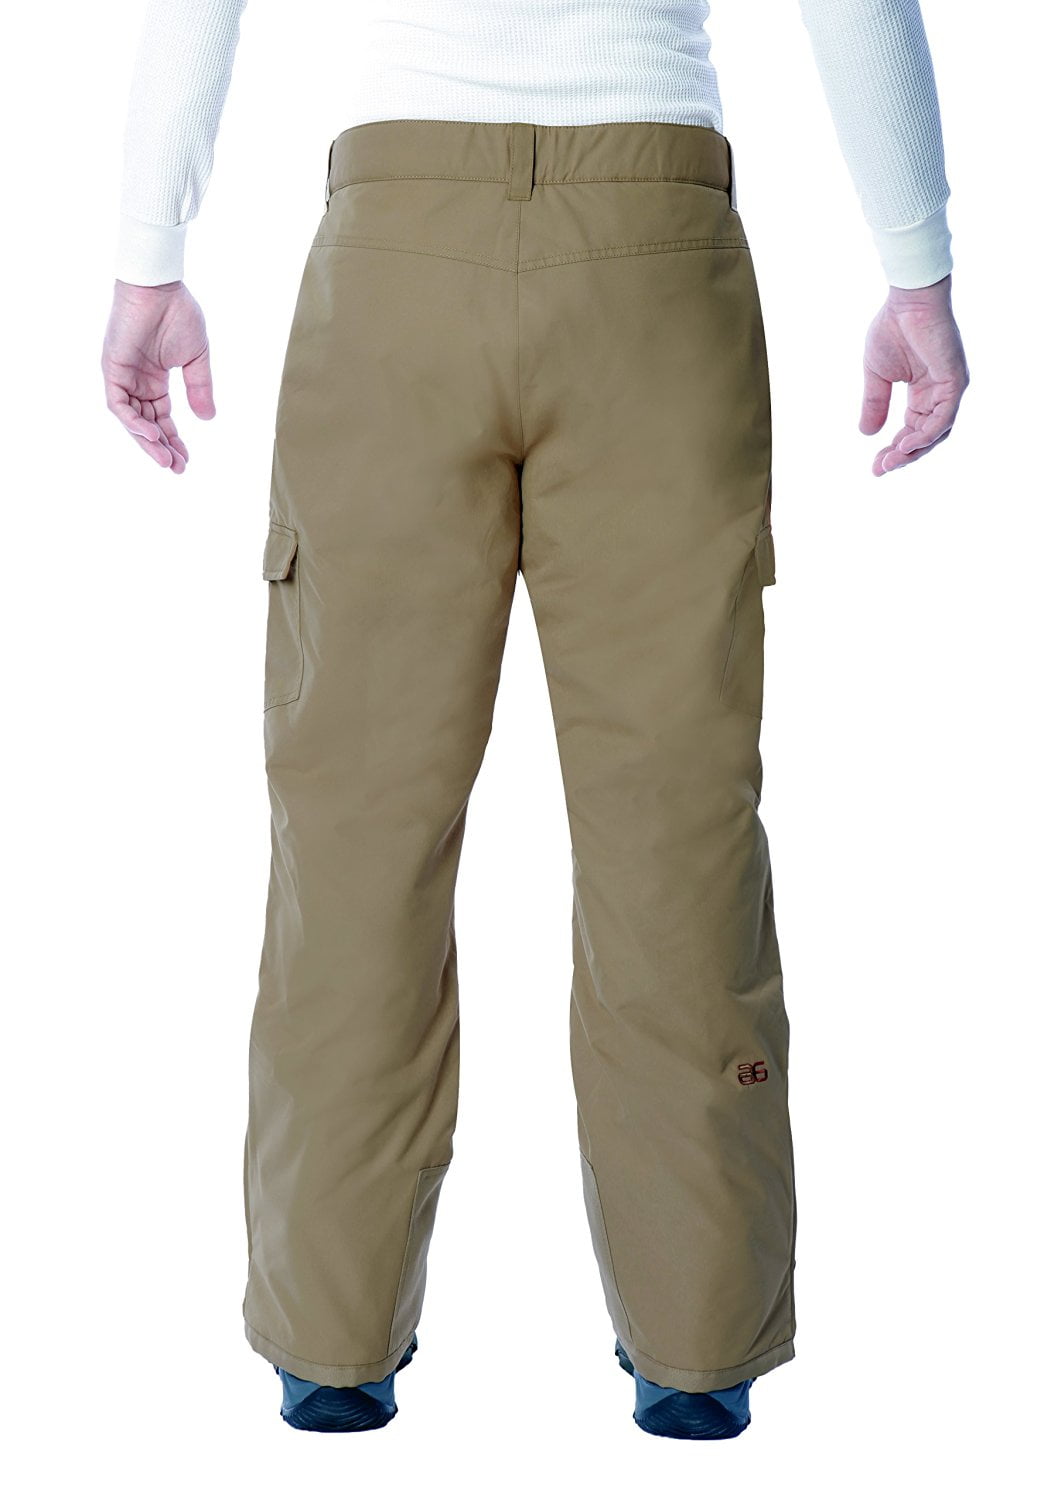 ストレッチドビー Arctix Men's Mountain Premium Snowboard Cargo Pants, Khaki, X-Large/28